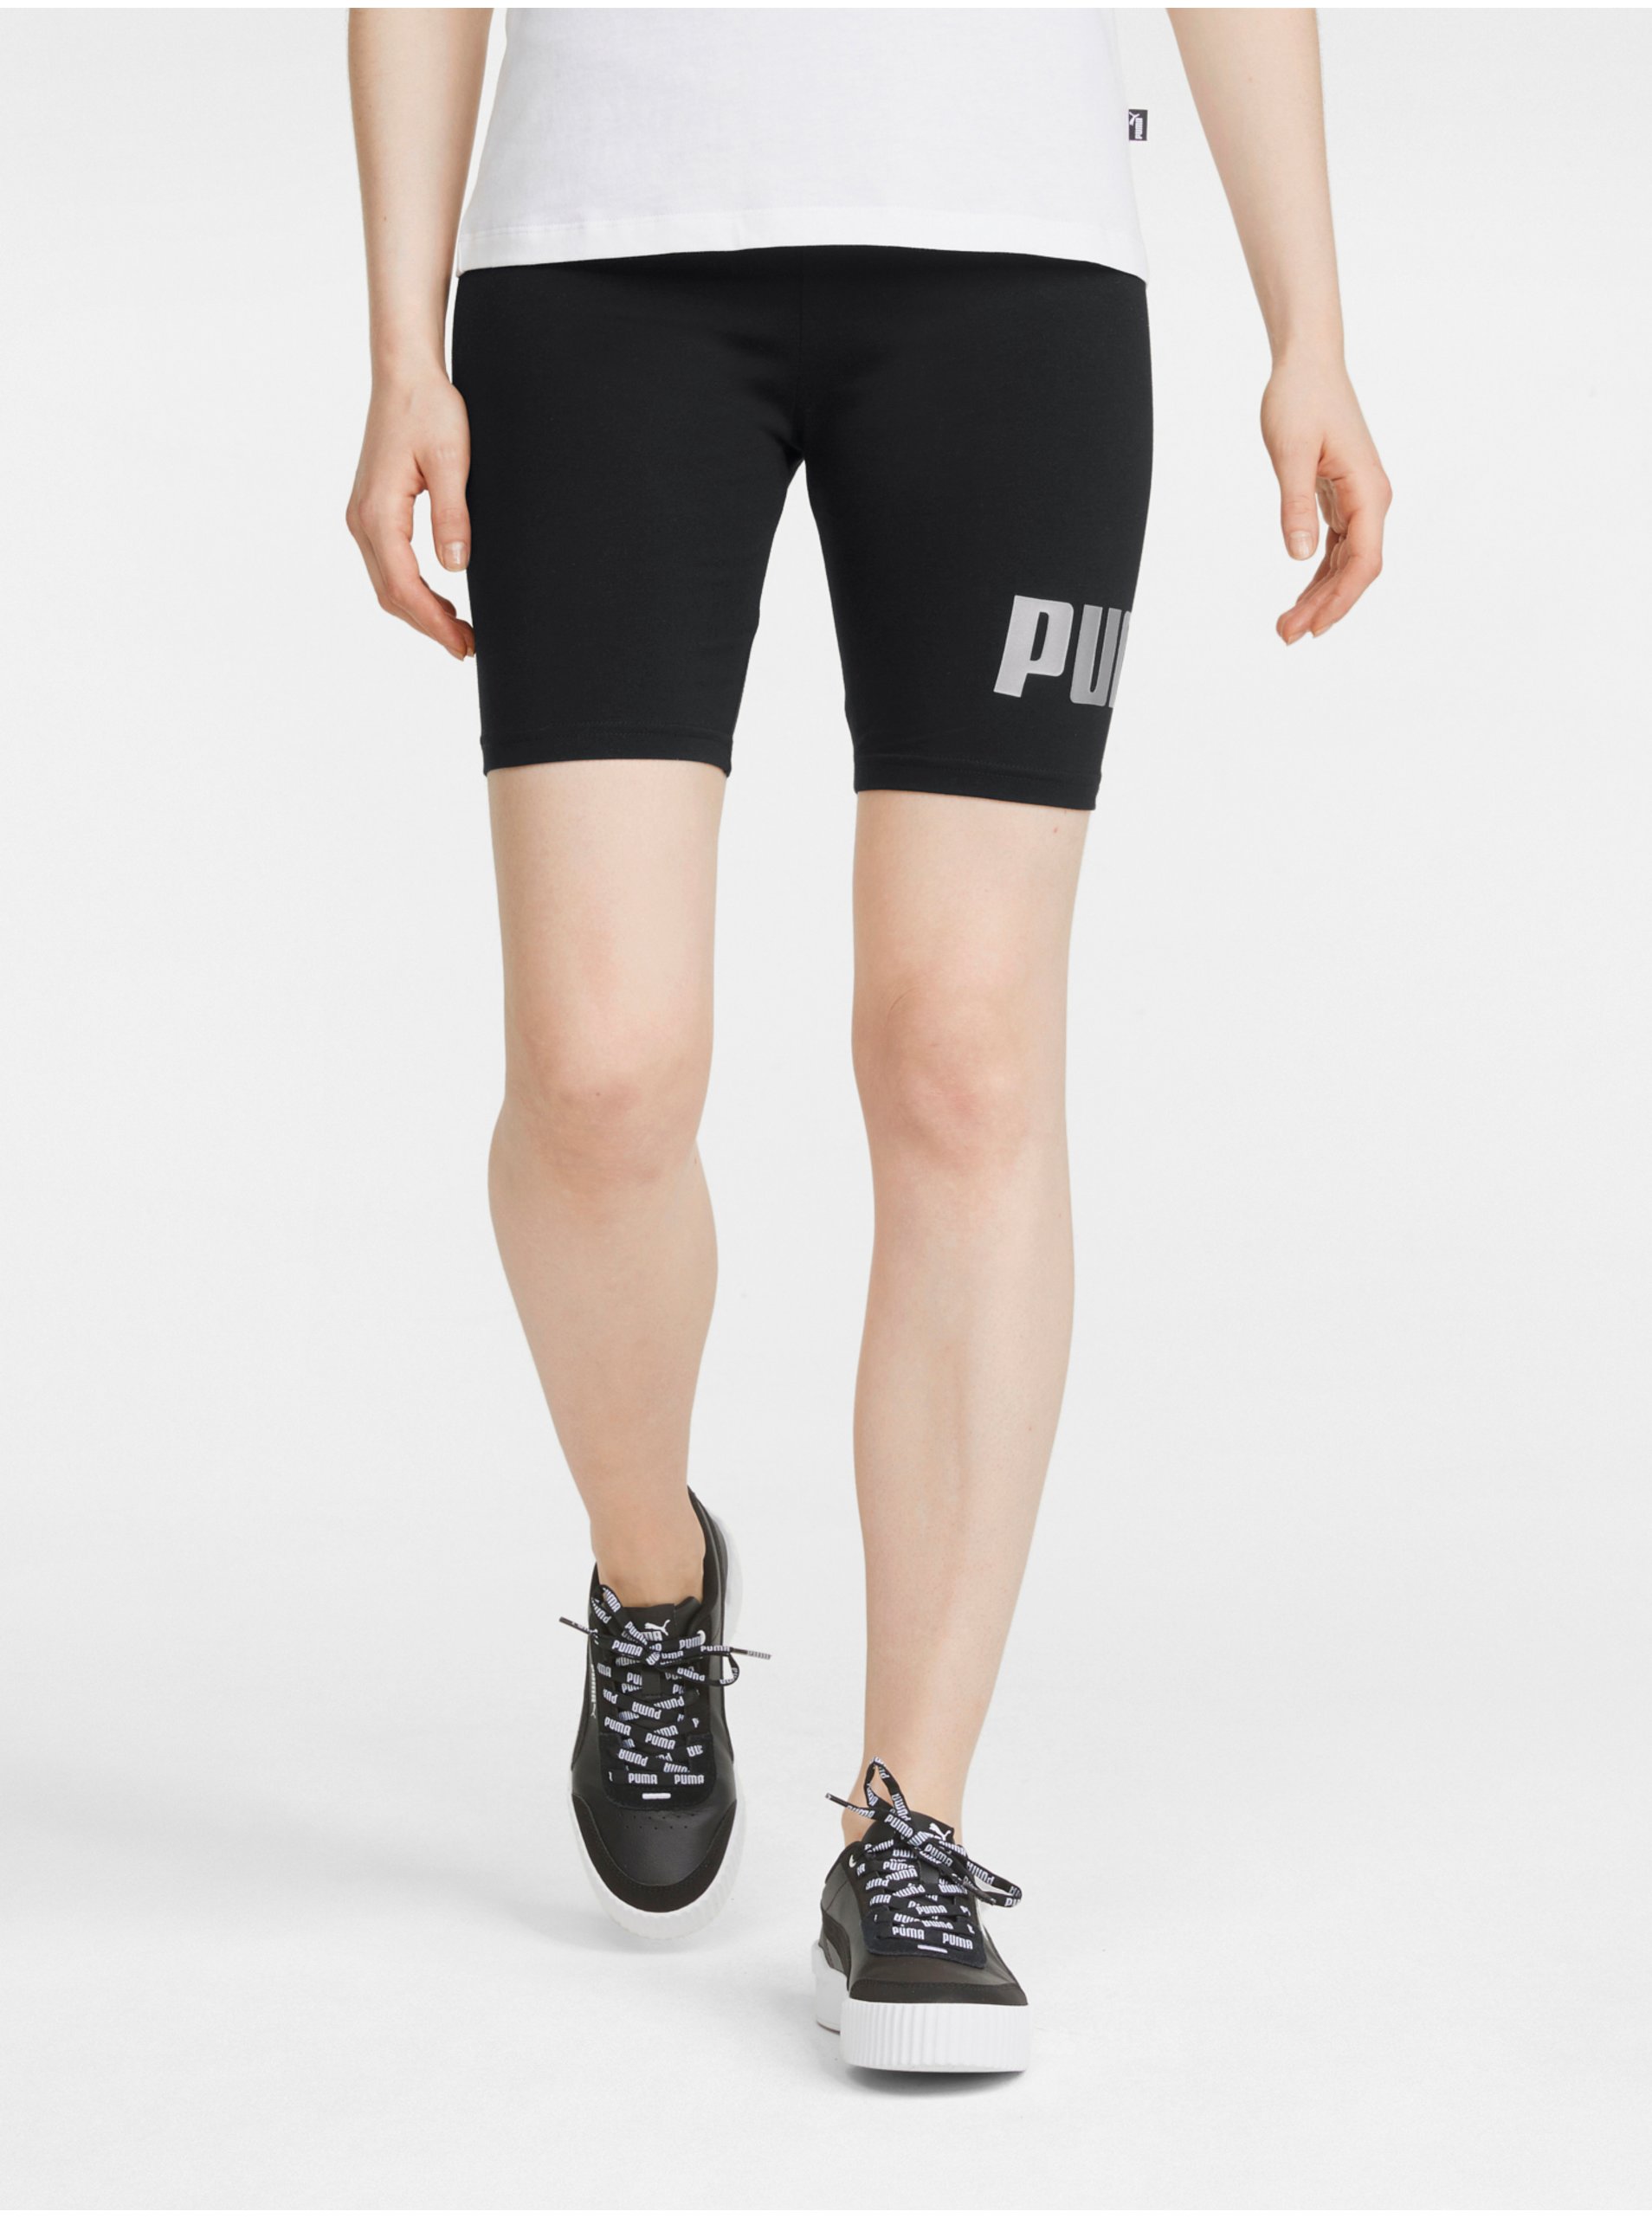 E-shop Černé dámské krátké legíny Puma Biker Shorts